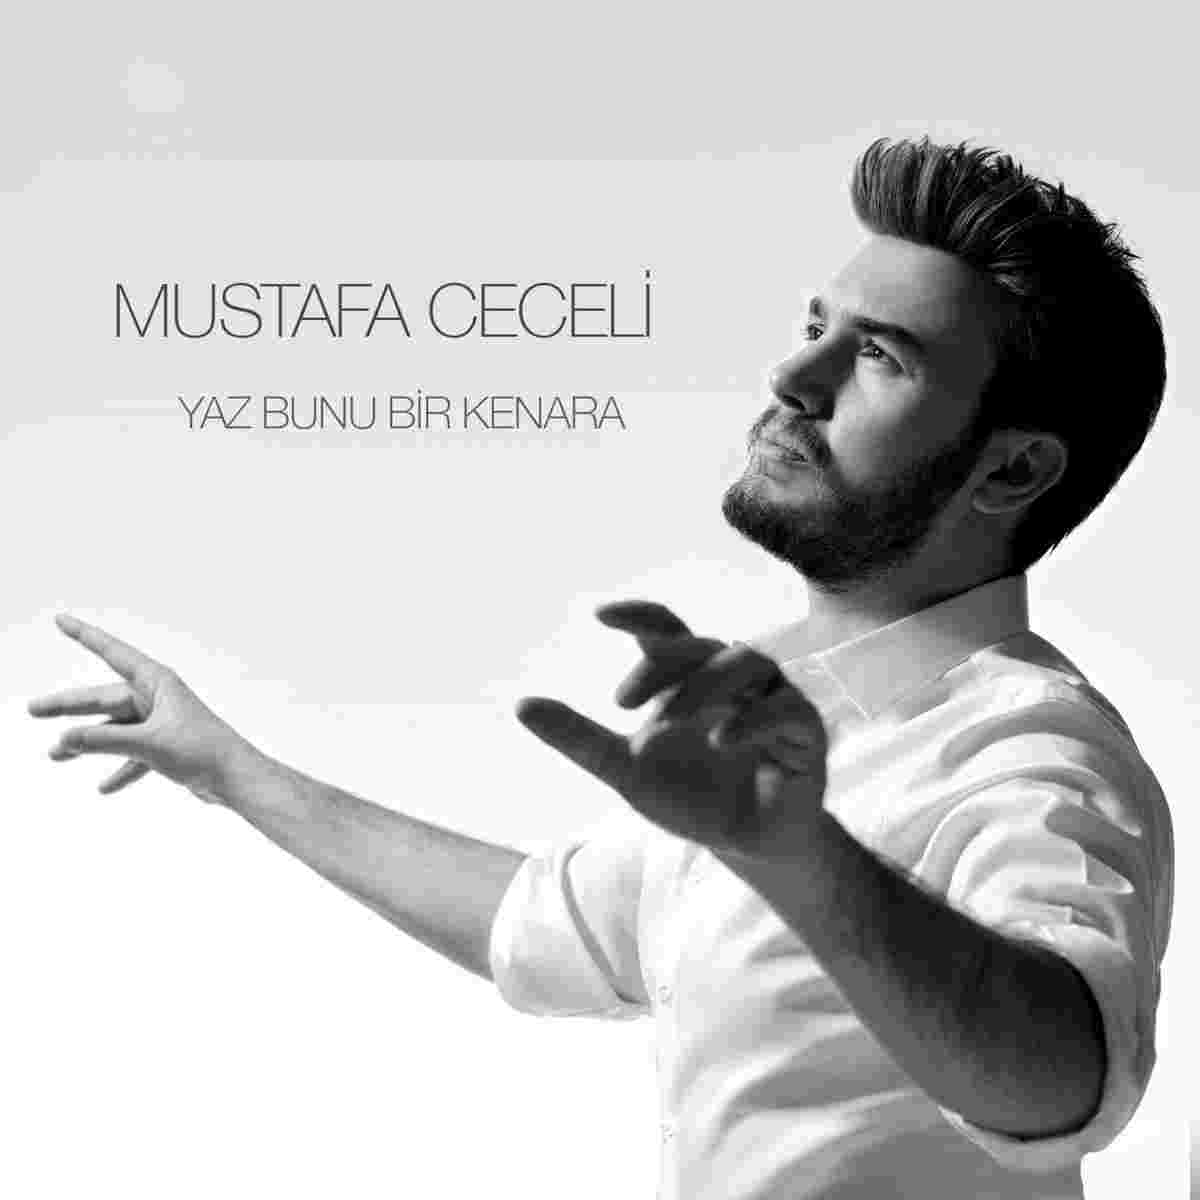 Mustafa Ceceli Yaz Bunu Bir Kenara Mp3 Indir Muzik Dinle Yaz Bunu Bir Kenara Download